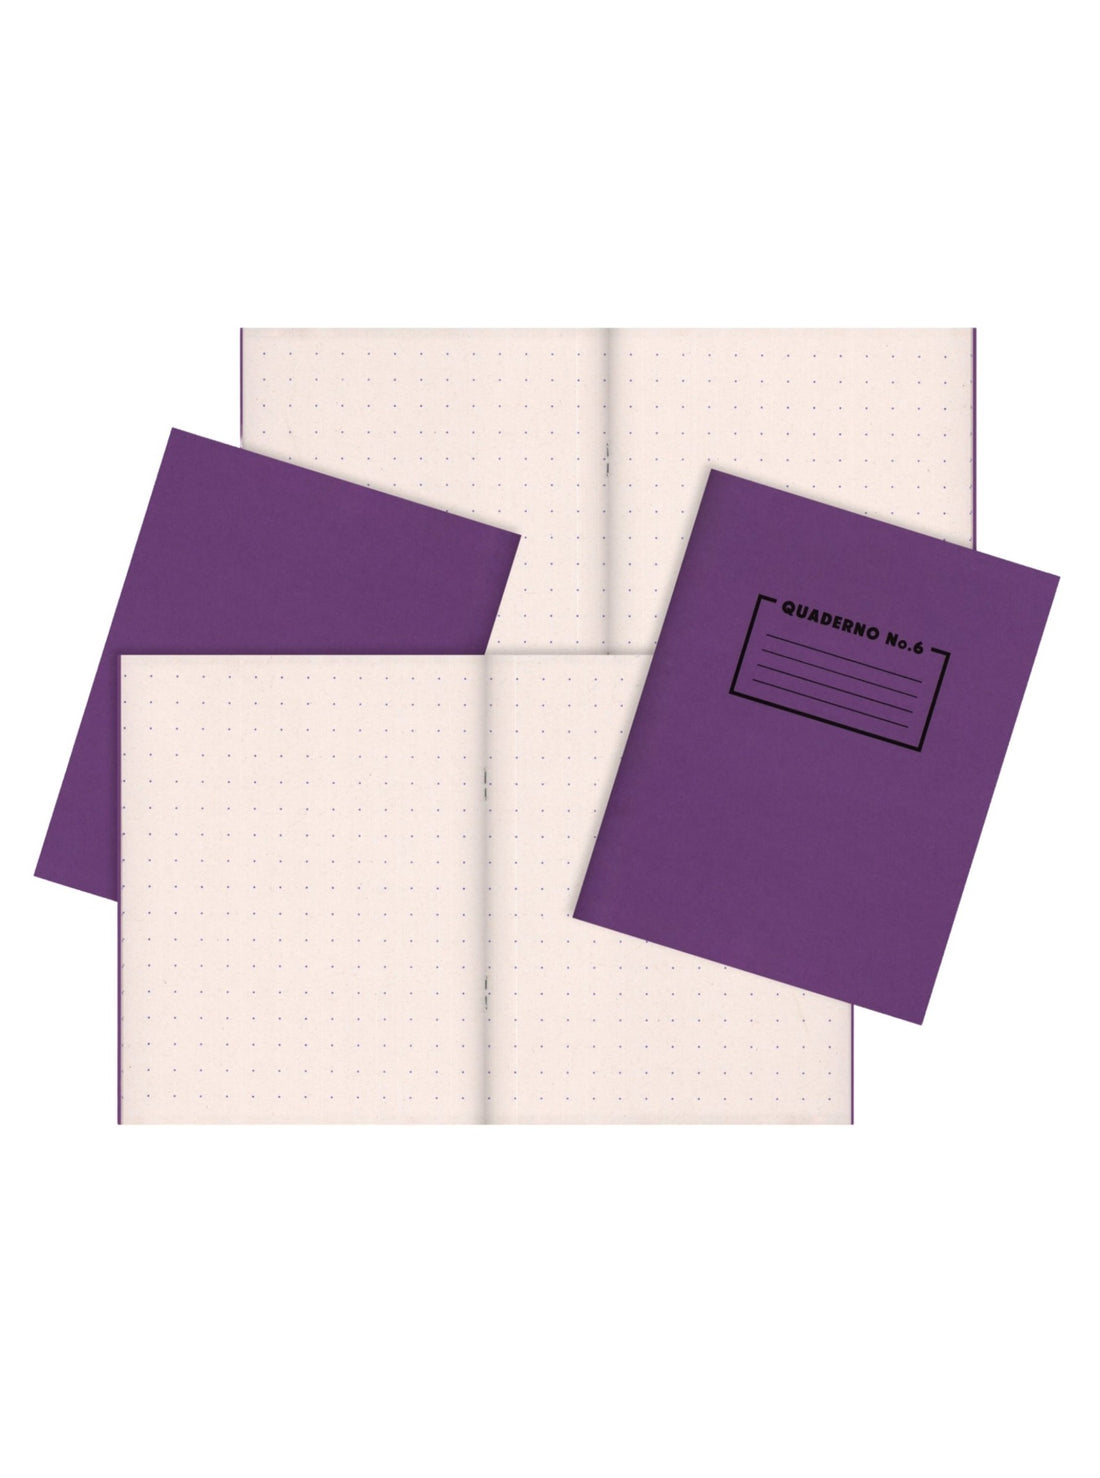 Risotto Studio Purple notebook